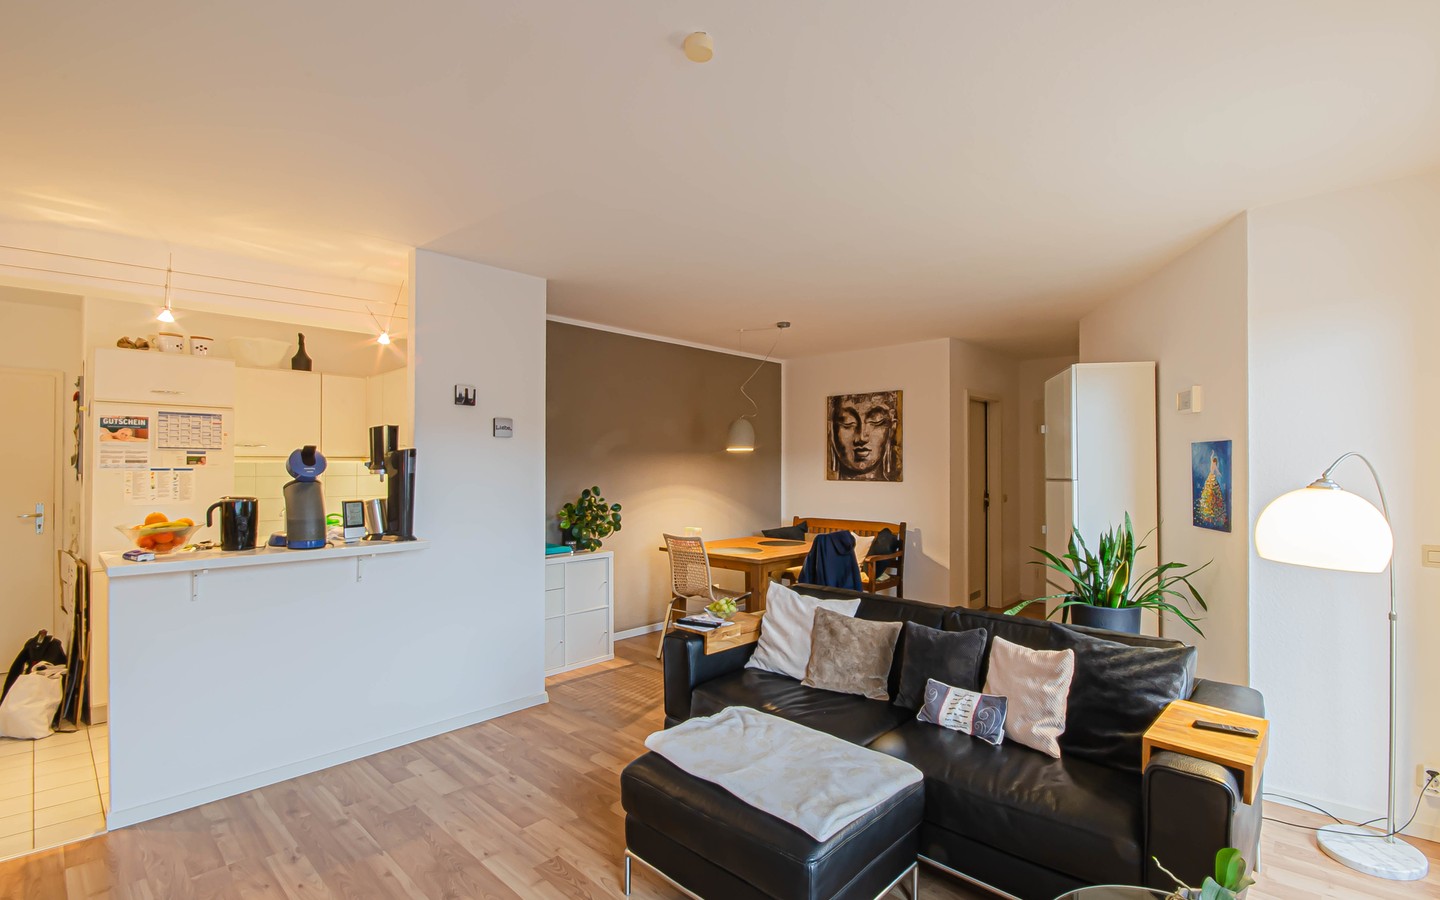 Wohnbereich - Schicke Single-Wohnung mit großer Dachterrasse in ruhiger Lage